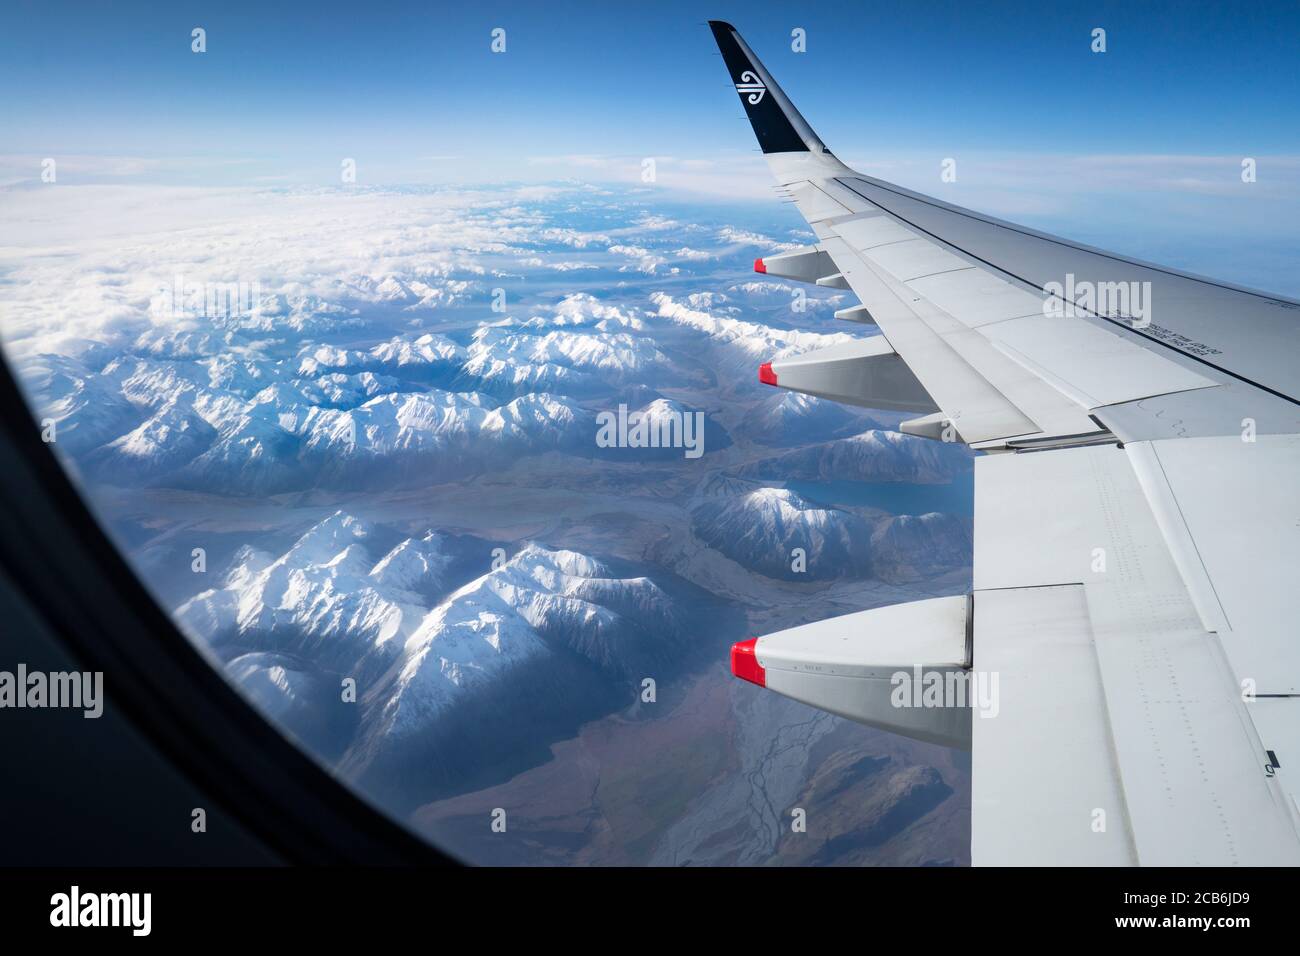 Vista aerea di un'ala di aeroplano con il logo Air New Zealand e le montagne innevate e i fiumi in inverno. Immagine ripresa su un rimorchio volante Air NZ Foto Stock